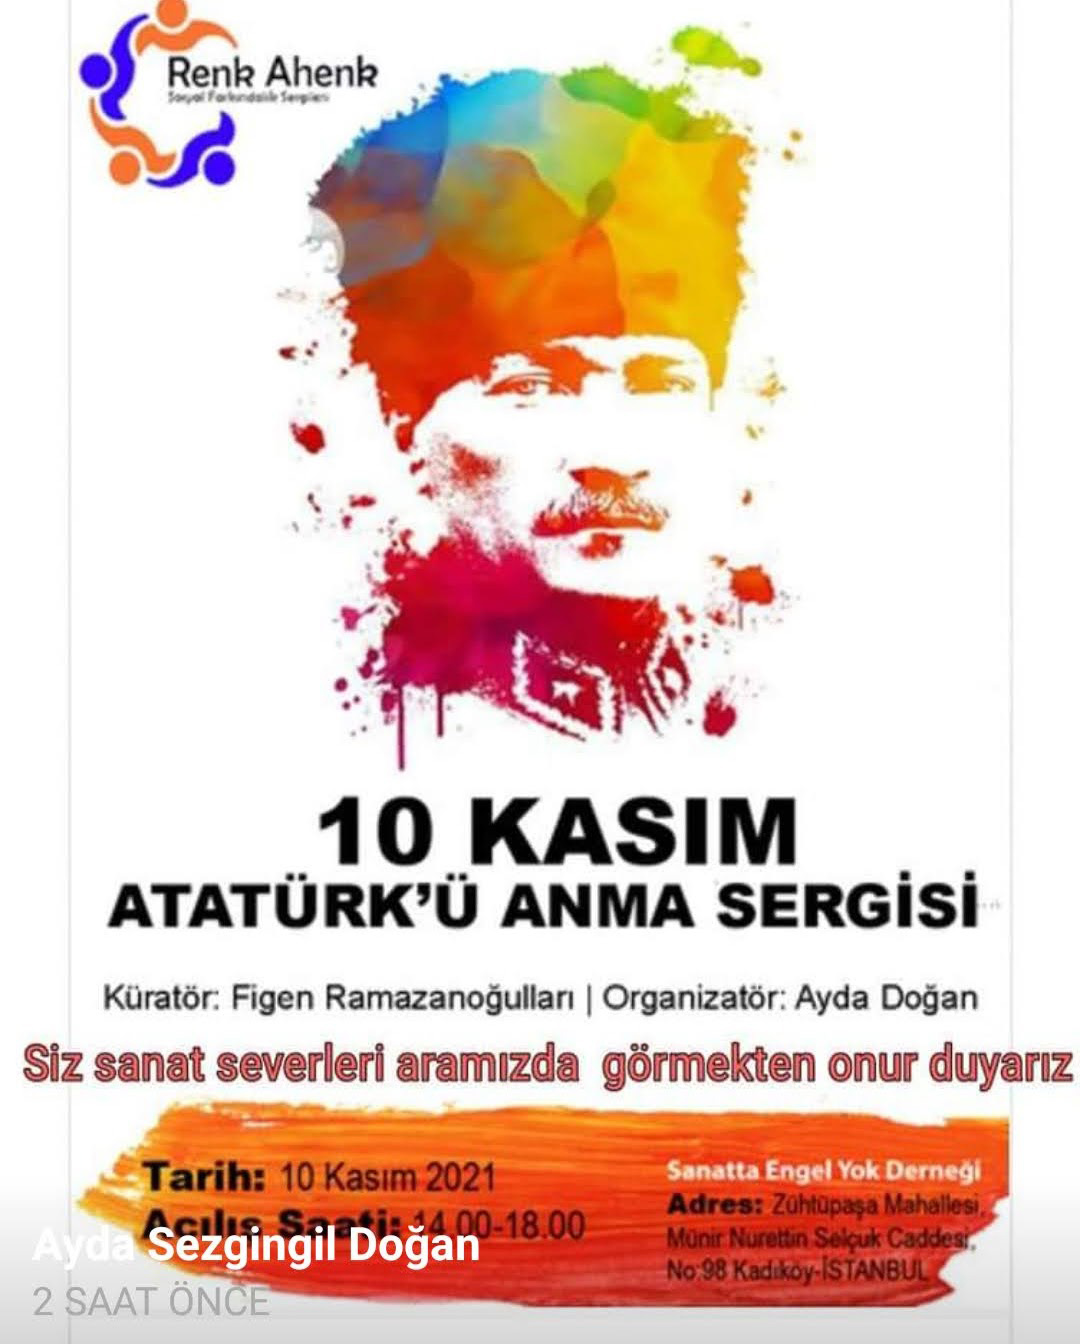 Sanatta Engel Yok Vakfı'nda 10 Kasım Atatürk'ü Anma Sergisi